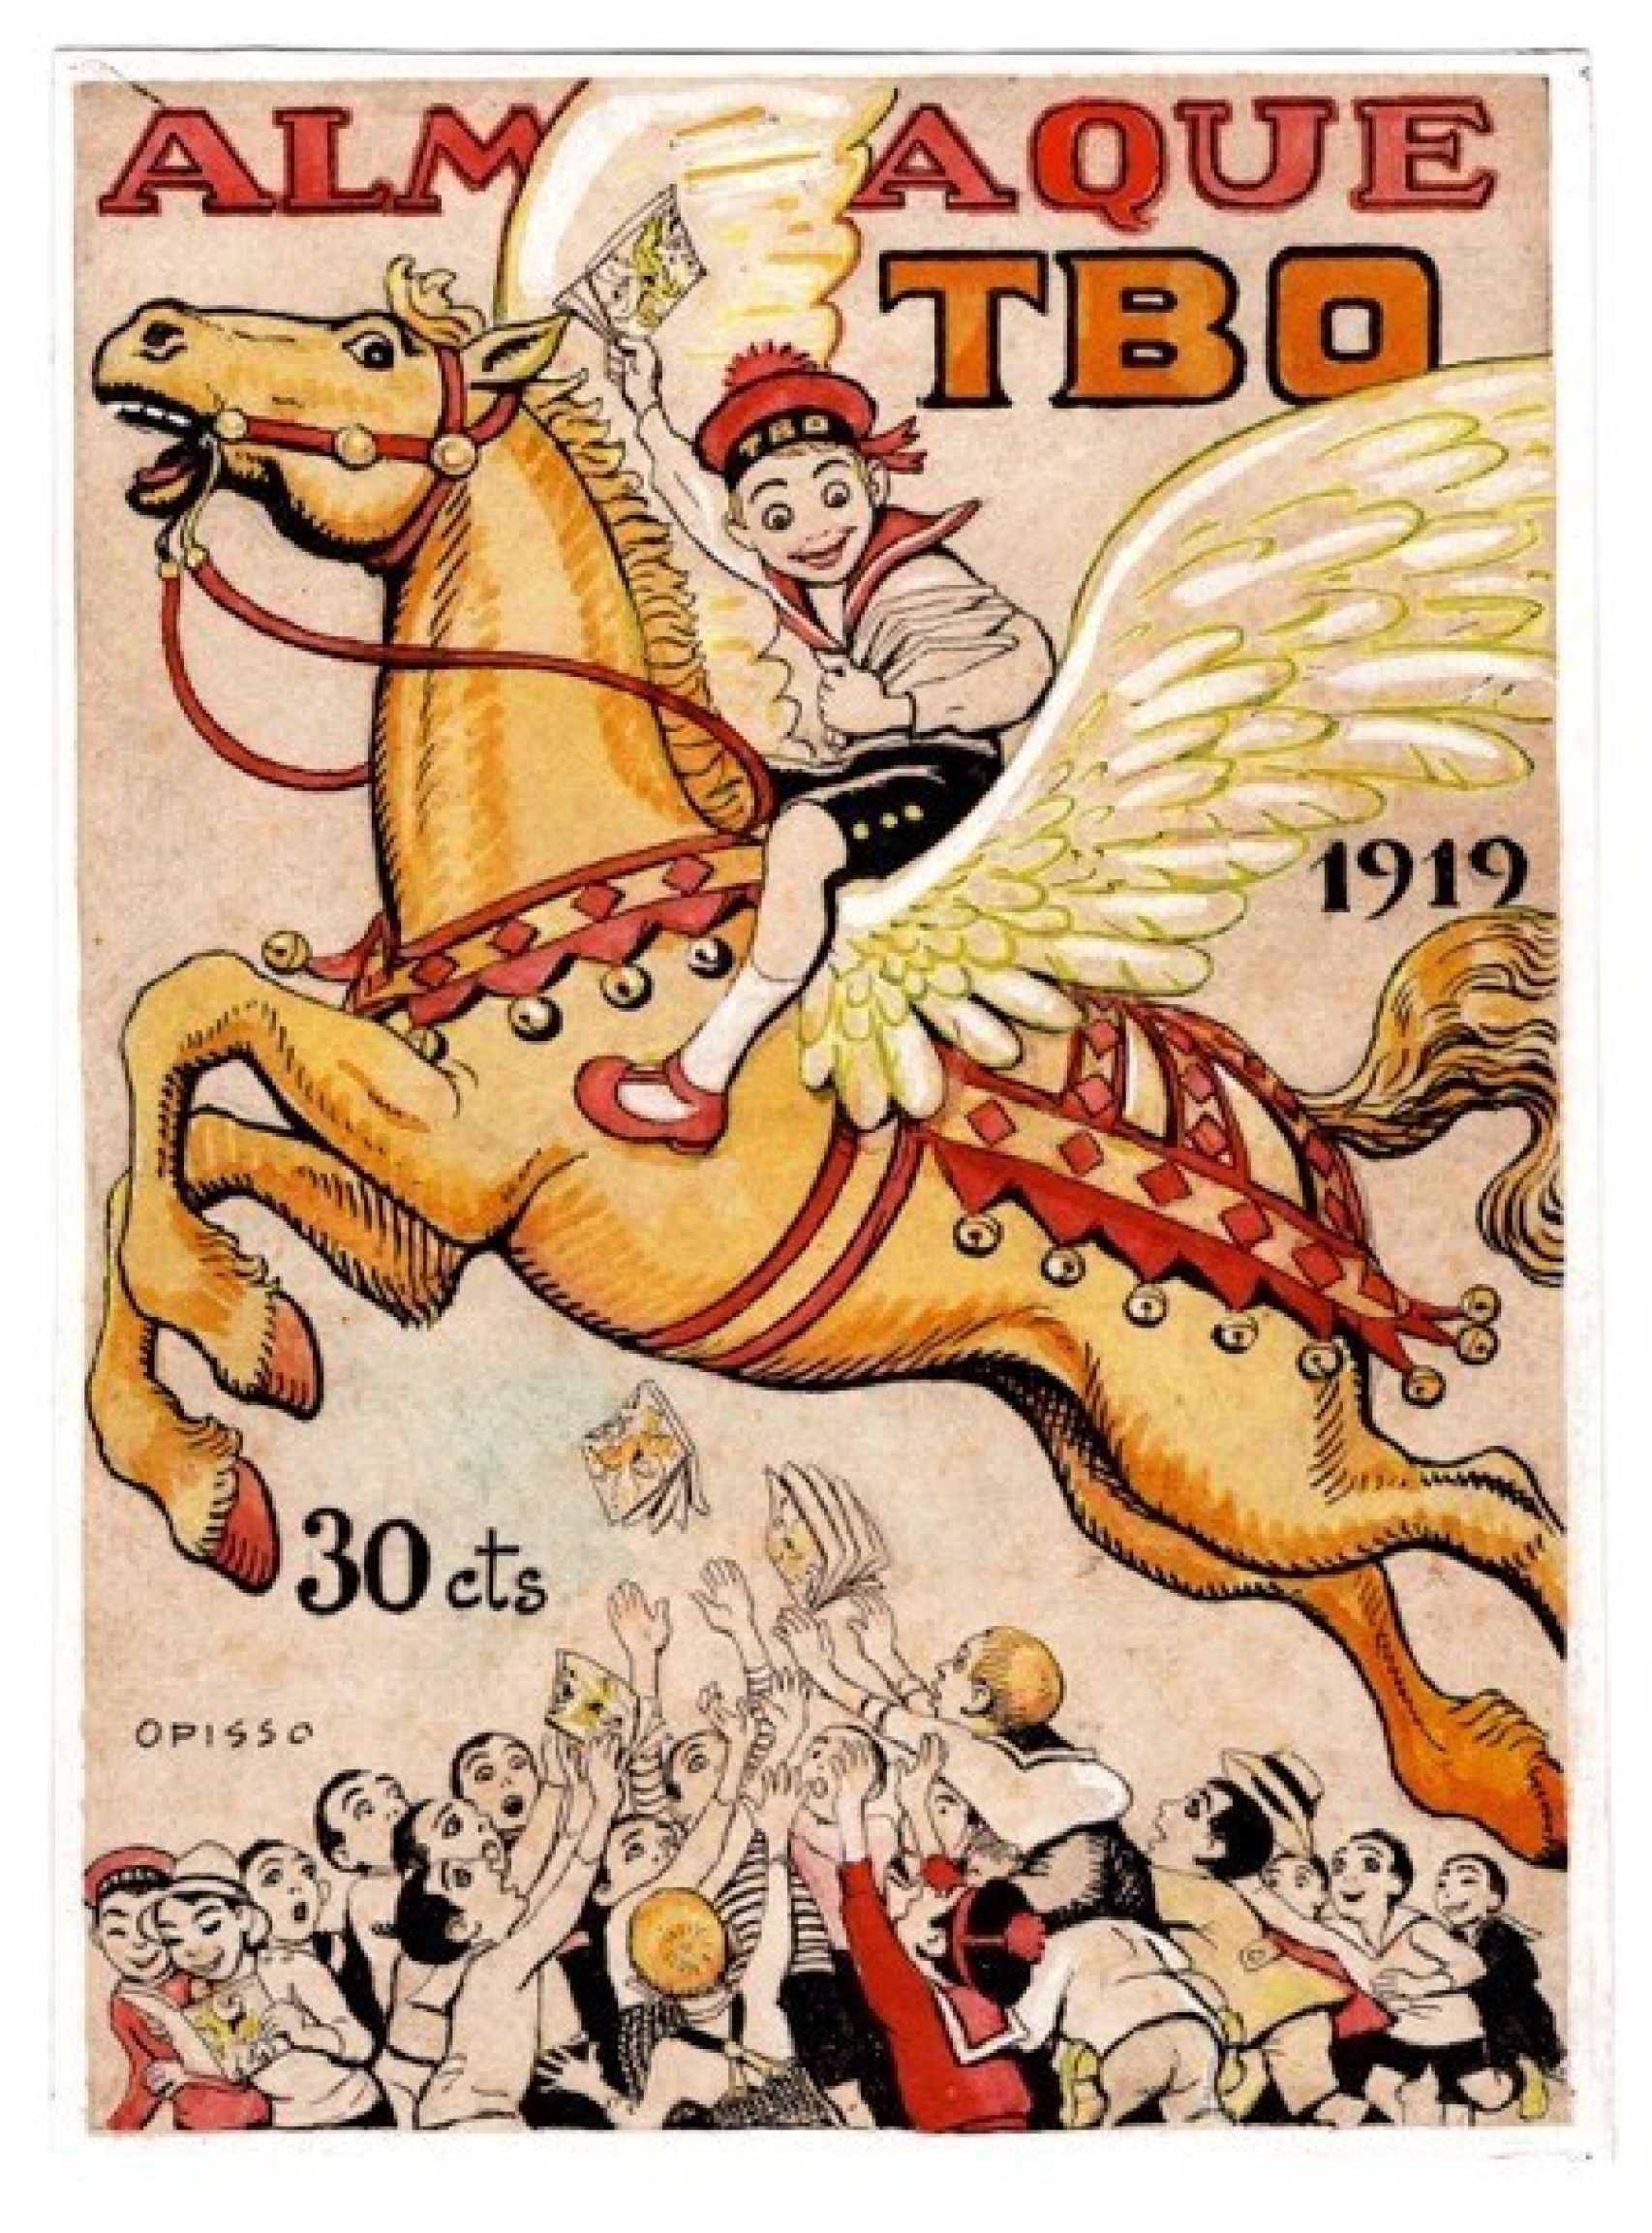 Ricard Opisso Sala. Almanaque TBO 1919. Editorial Buigas. Diciembre de 1918. Colección Lluís Giralt. © Ricard Opisso, VEGAP, Barcelona, 2022.